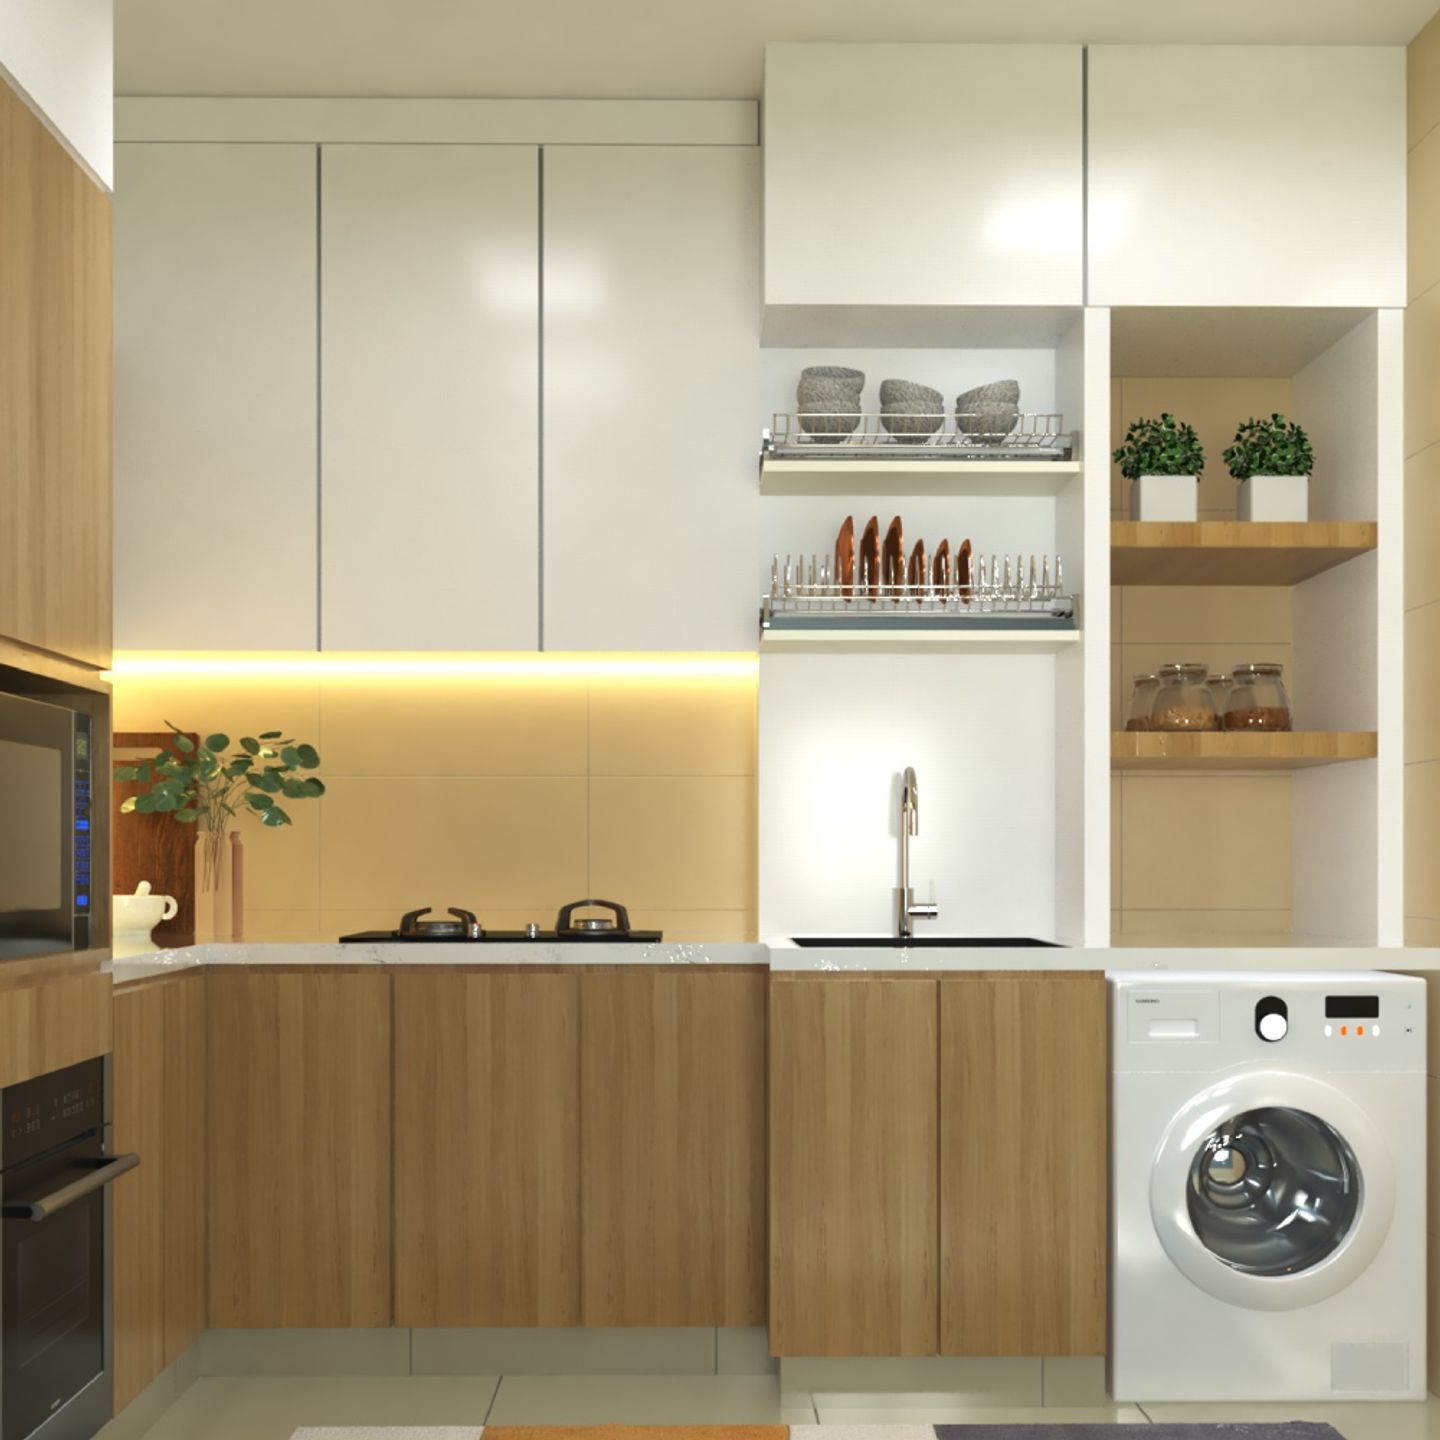 White And Oak Laminate Design For Cabinets - Livspace